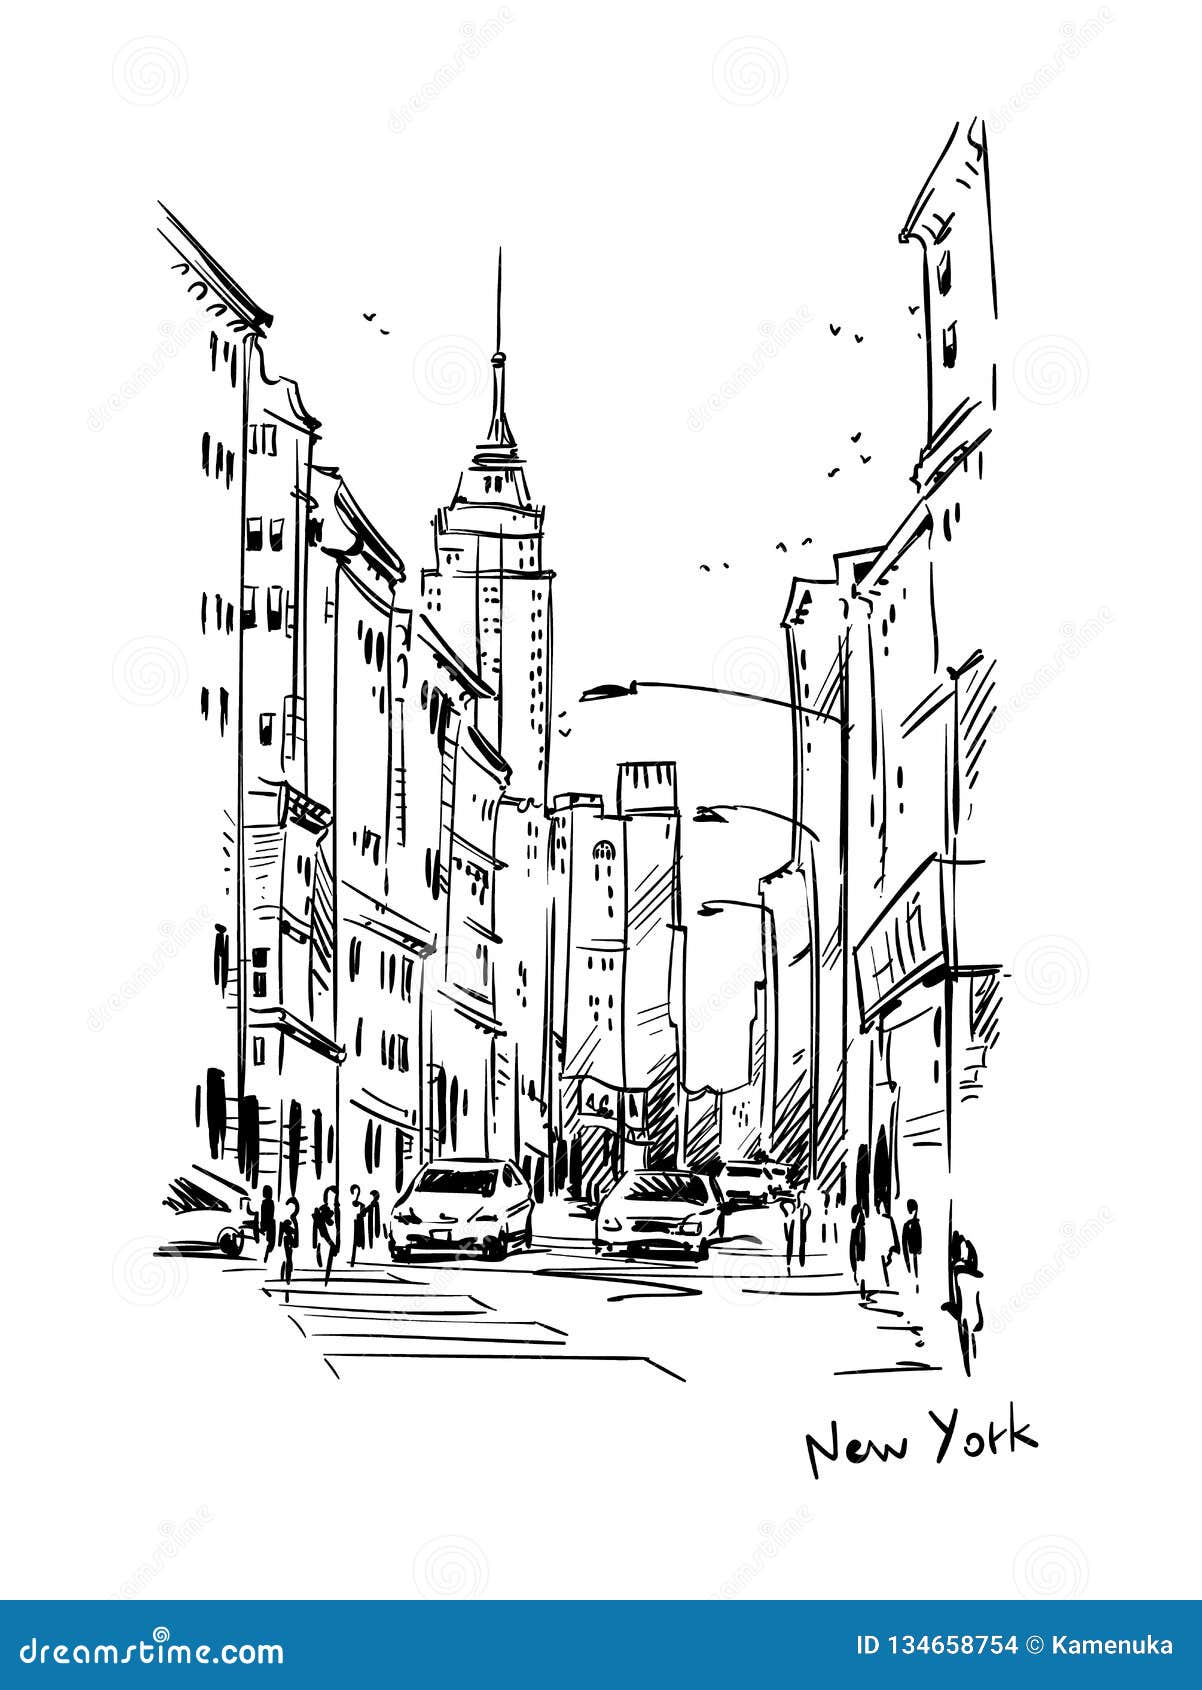 New York City Sketch by Ashen-mist on DeviantArt